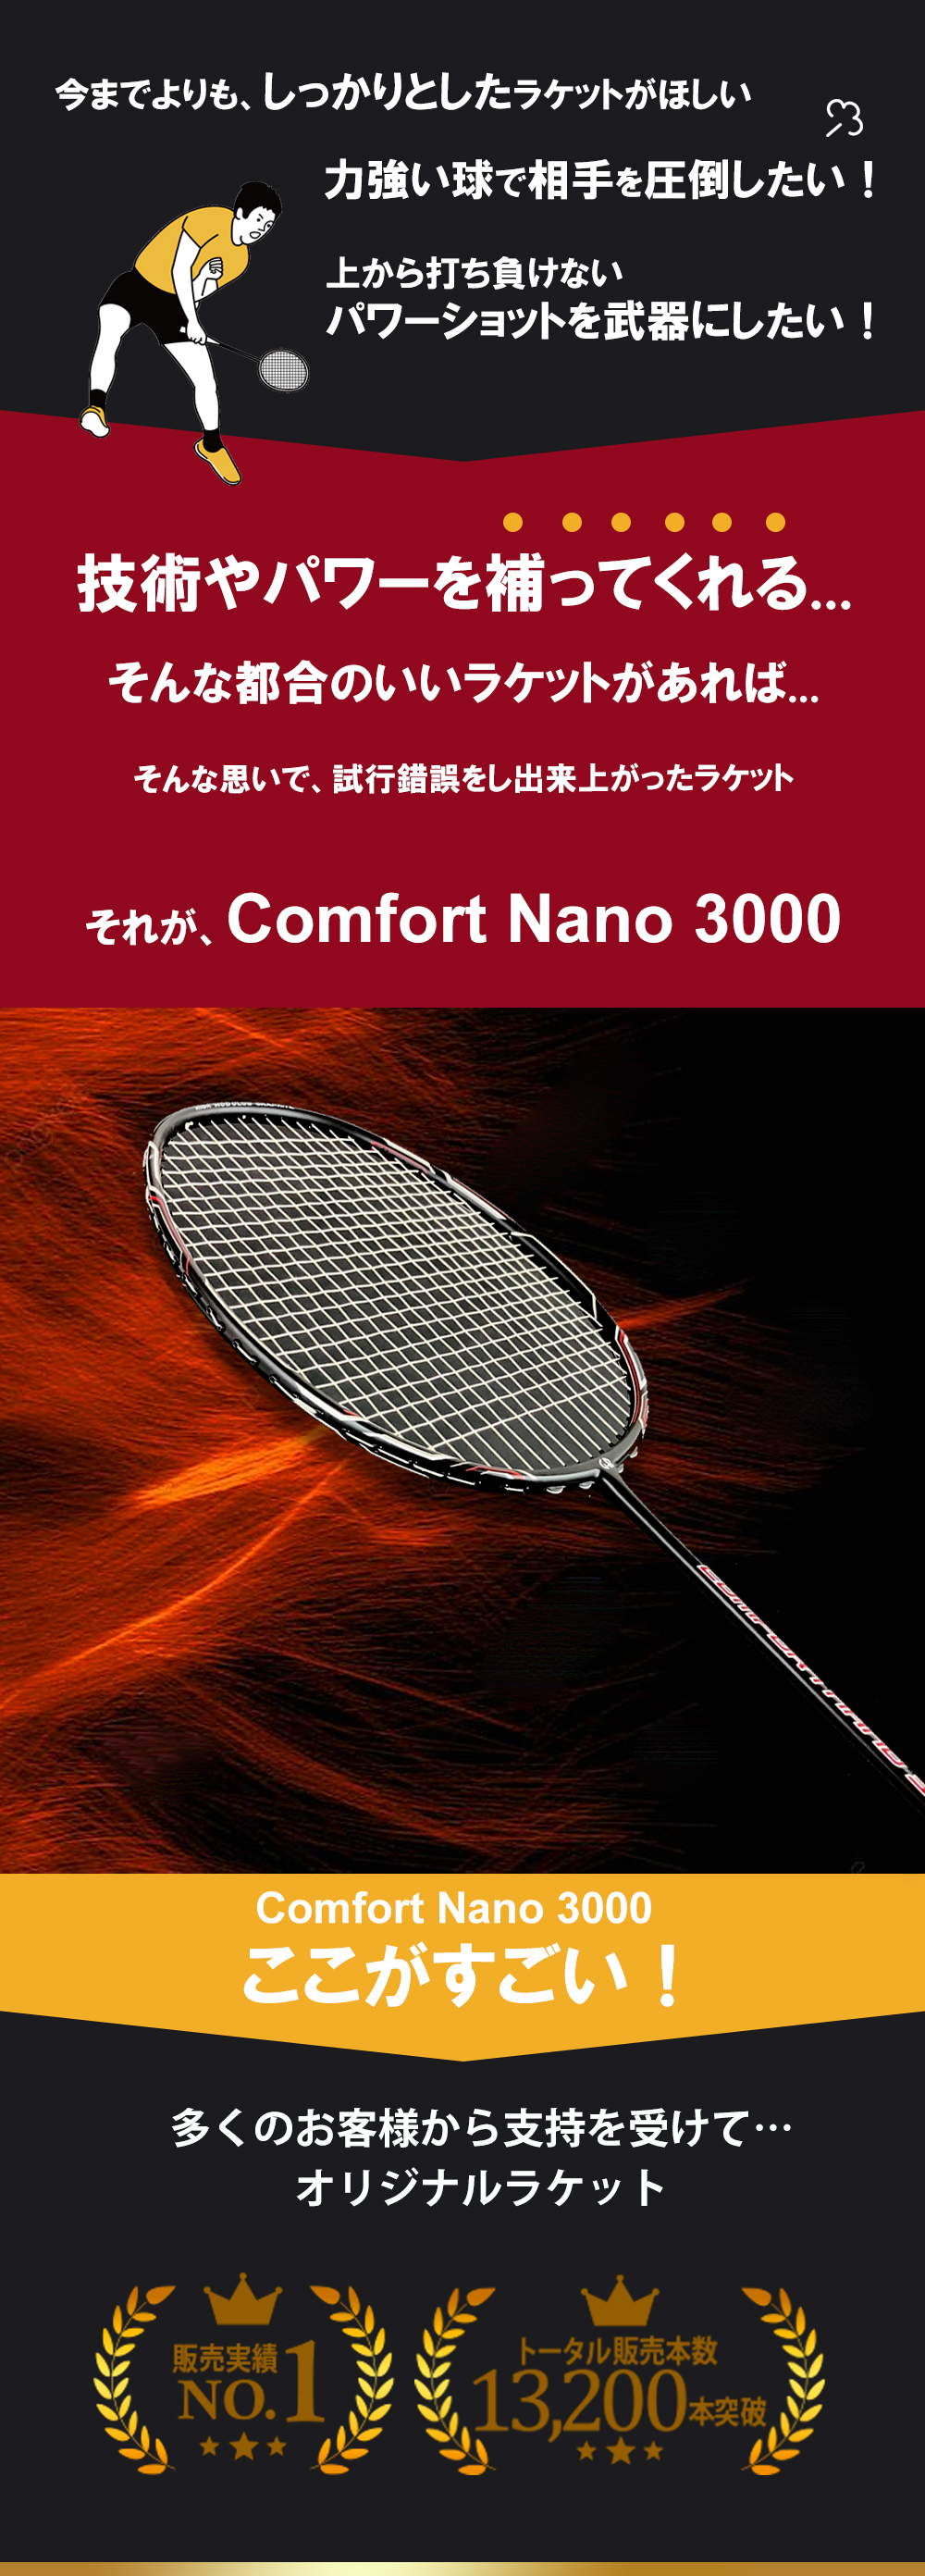 今までよりもしっかりしたラケットが欲しい。
力強い球で相手を圧倒したい。
上から打ち負けないパワーショットを武器にしたい。
技術やパワーを補ってくれる...そんな都合のいいラケットがあれば...そんな思いで、試行錯誤をし出来上がったラケットそれが、Comfort Nano 3000
そんなあなたに最適です。Comfort Nano 3000ここがすごい！販売実績NO.1 トータル販売本数13,200本突破
